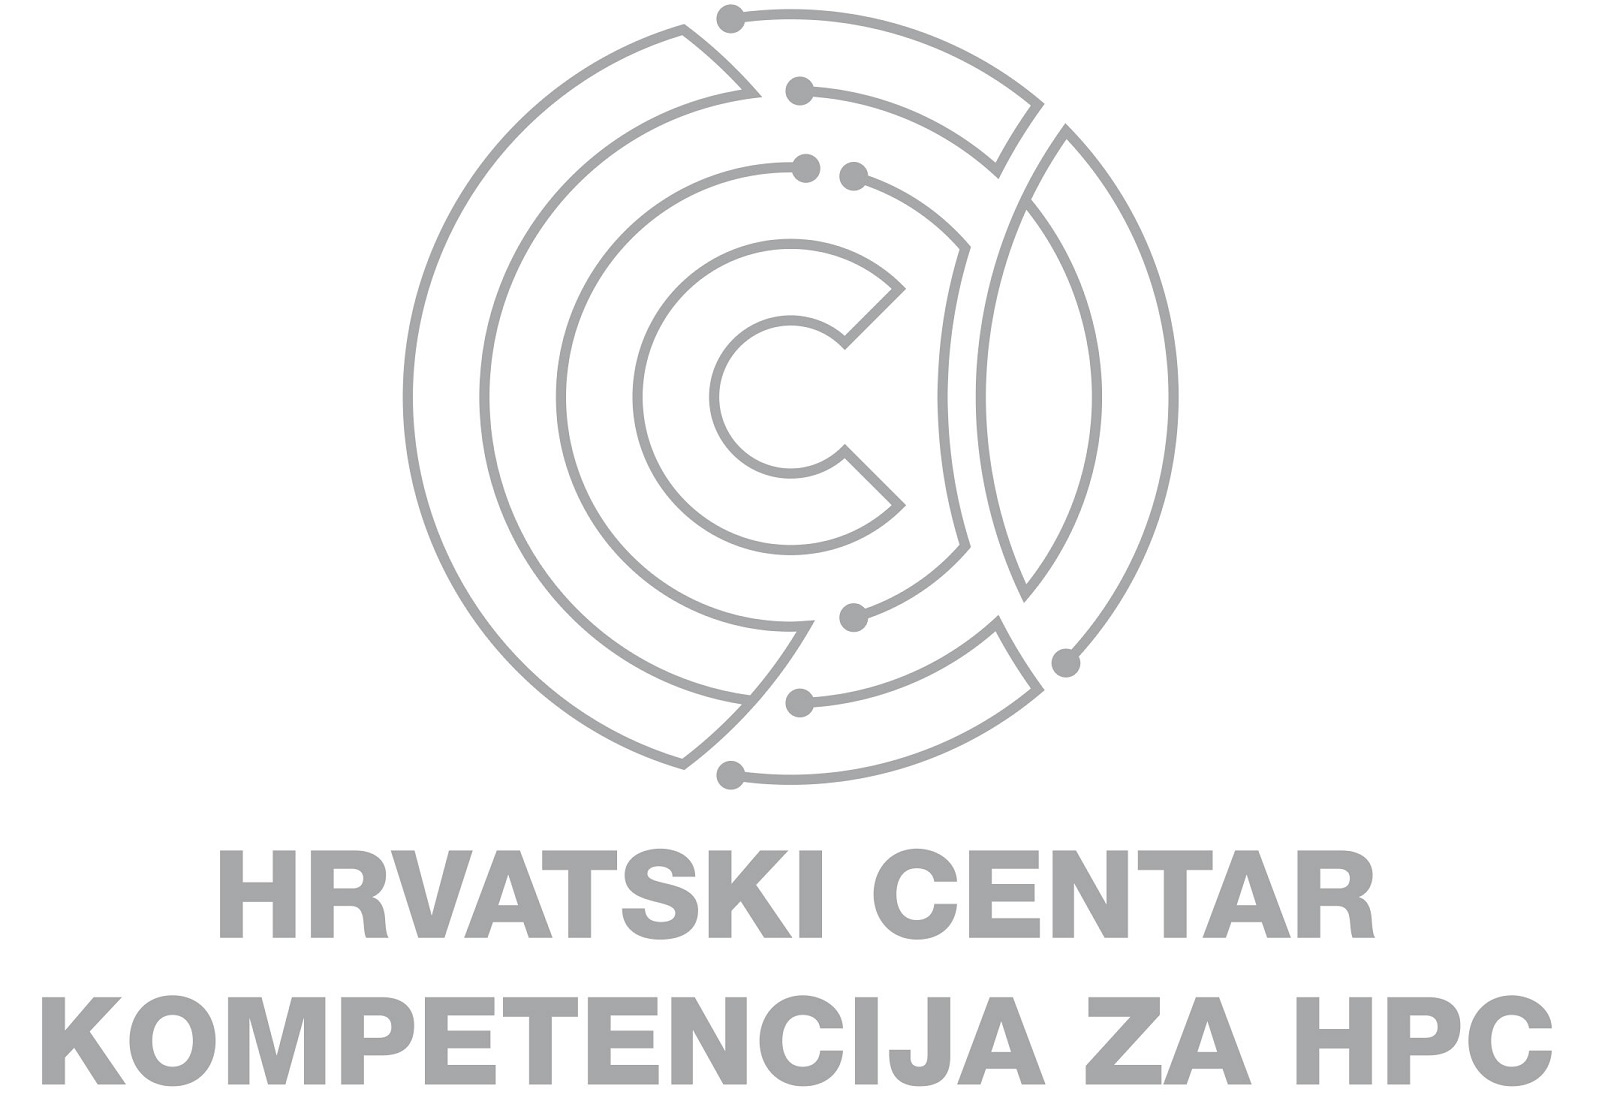 Hrvatski centar kompetencija za HPC